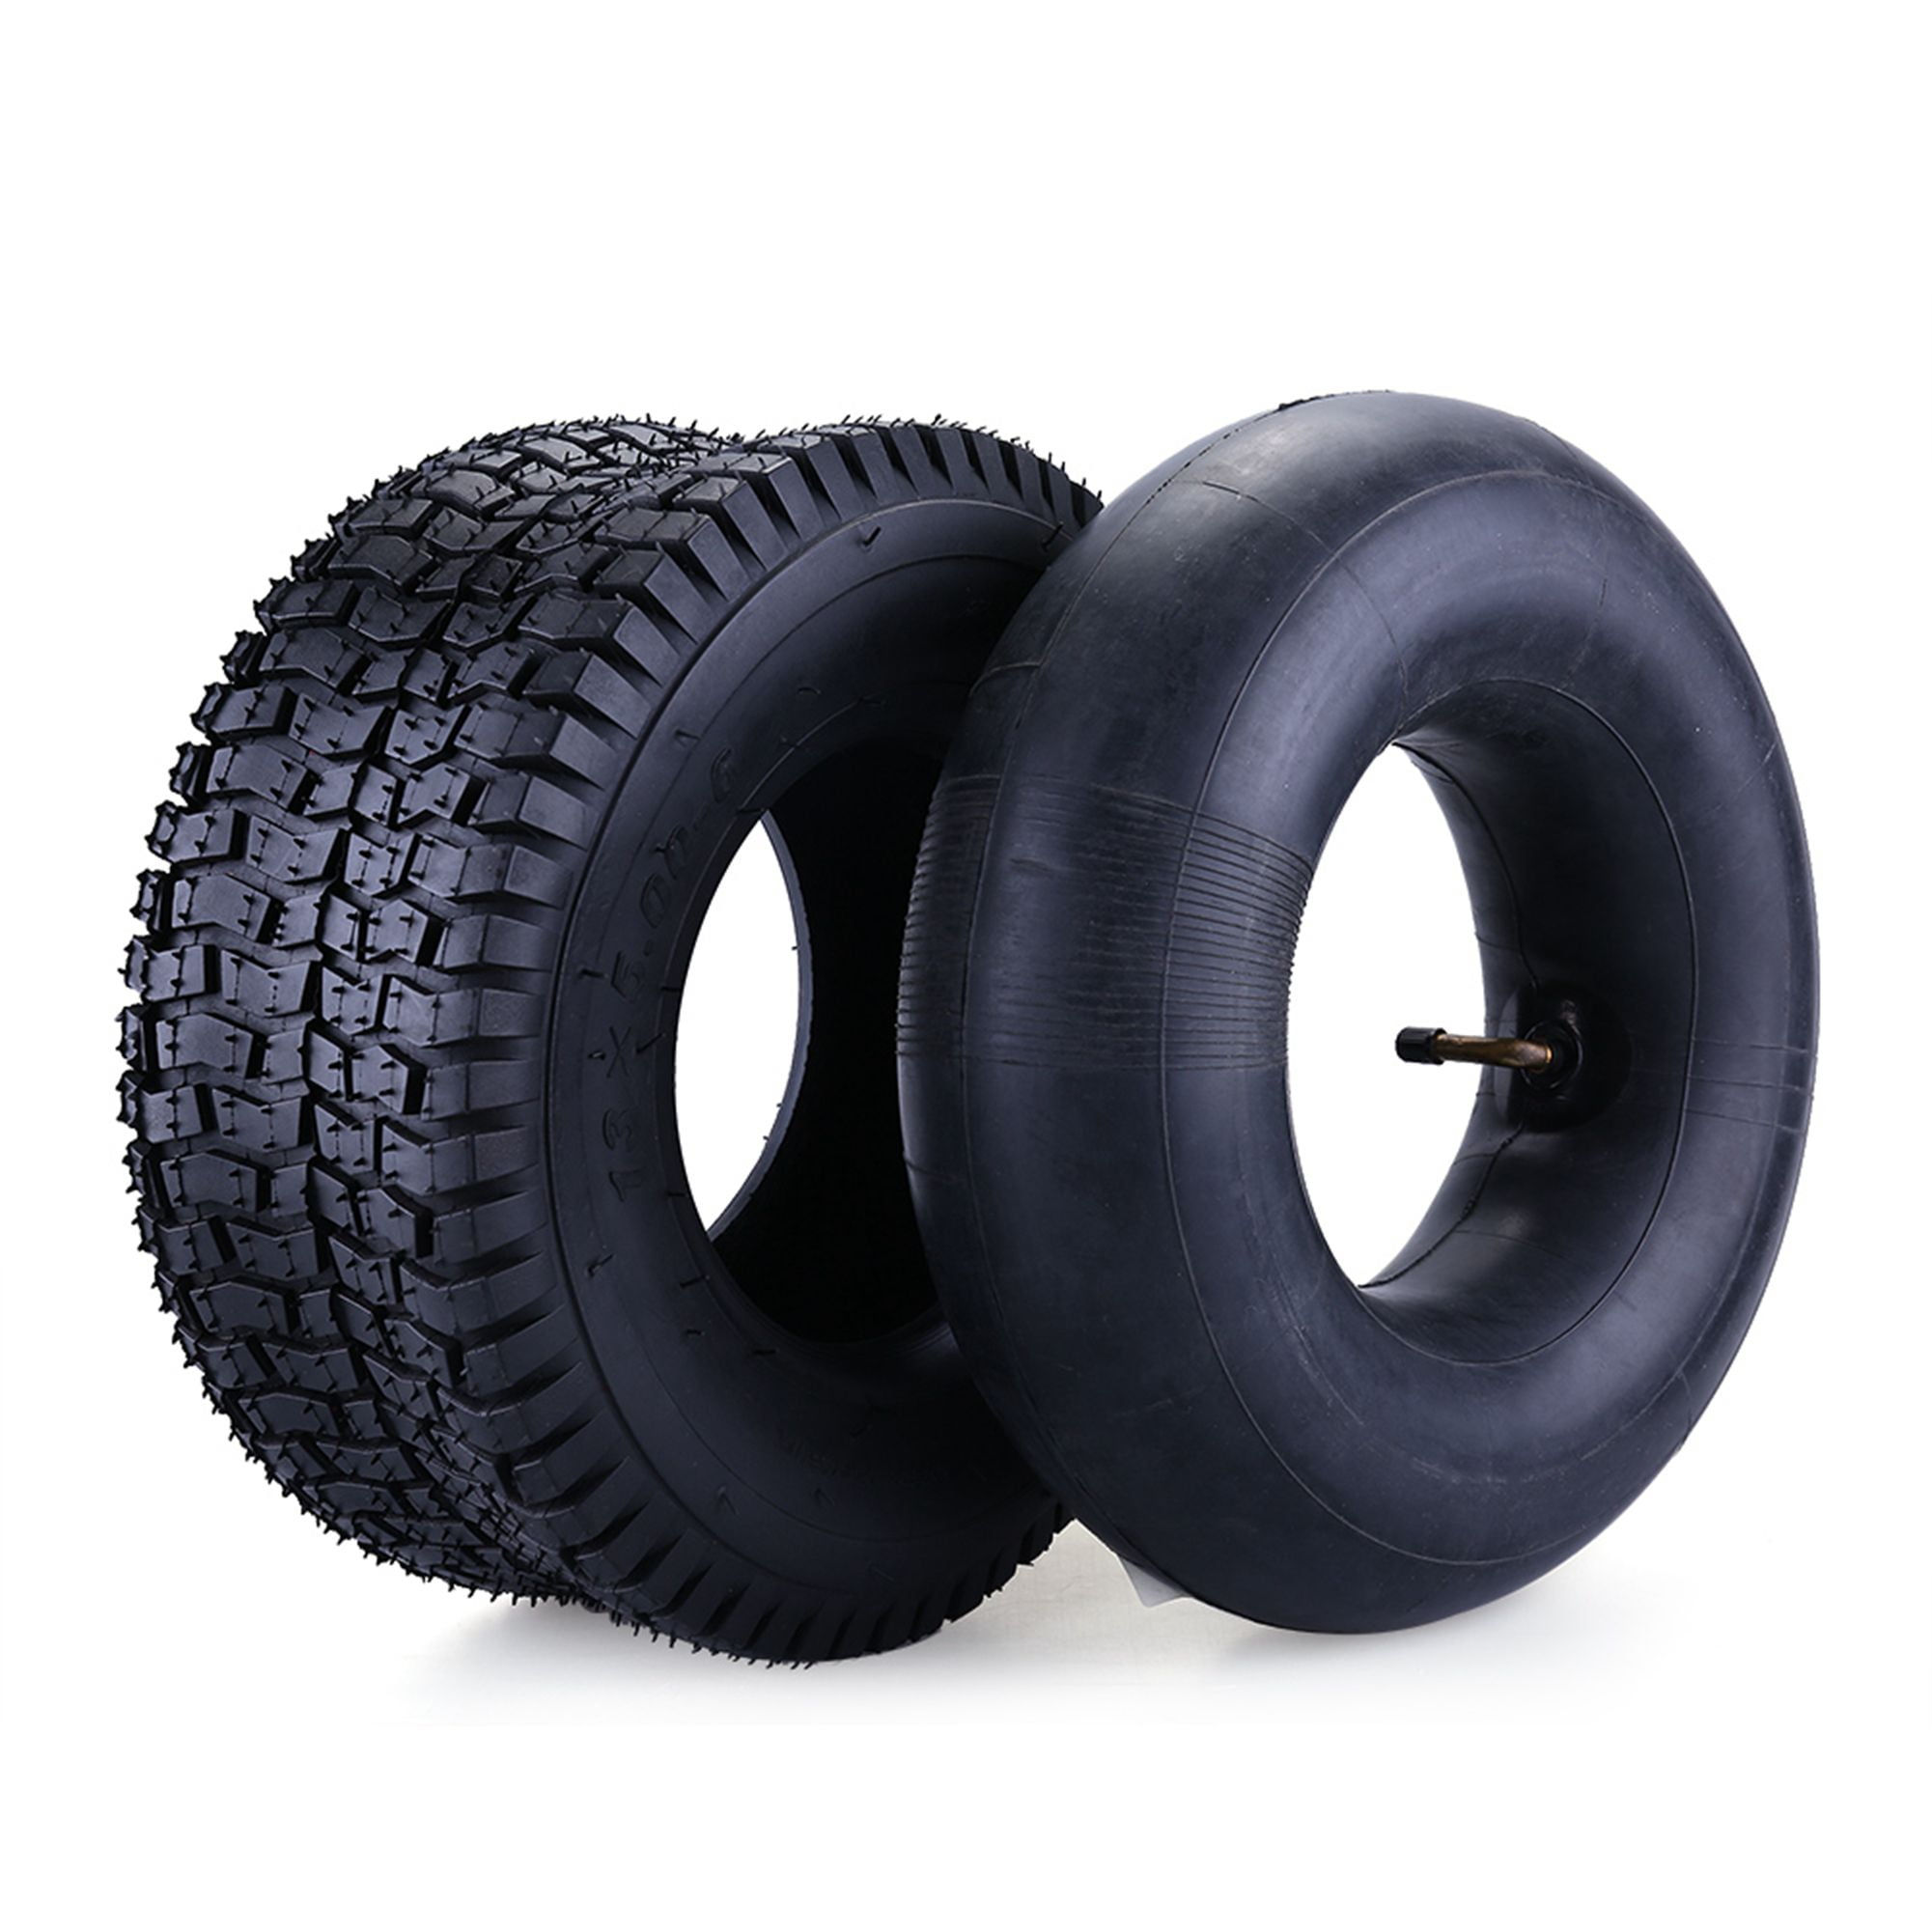 13x5.00-6 Tire & Inner Tube Set for Razor Dirt Quad and Go Kart, Dirt